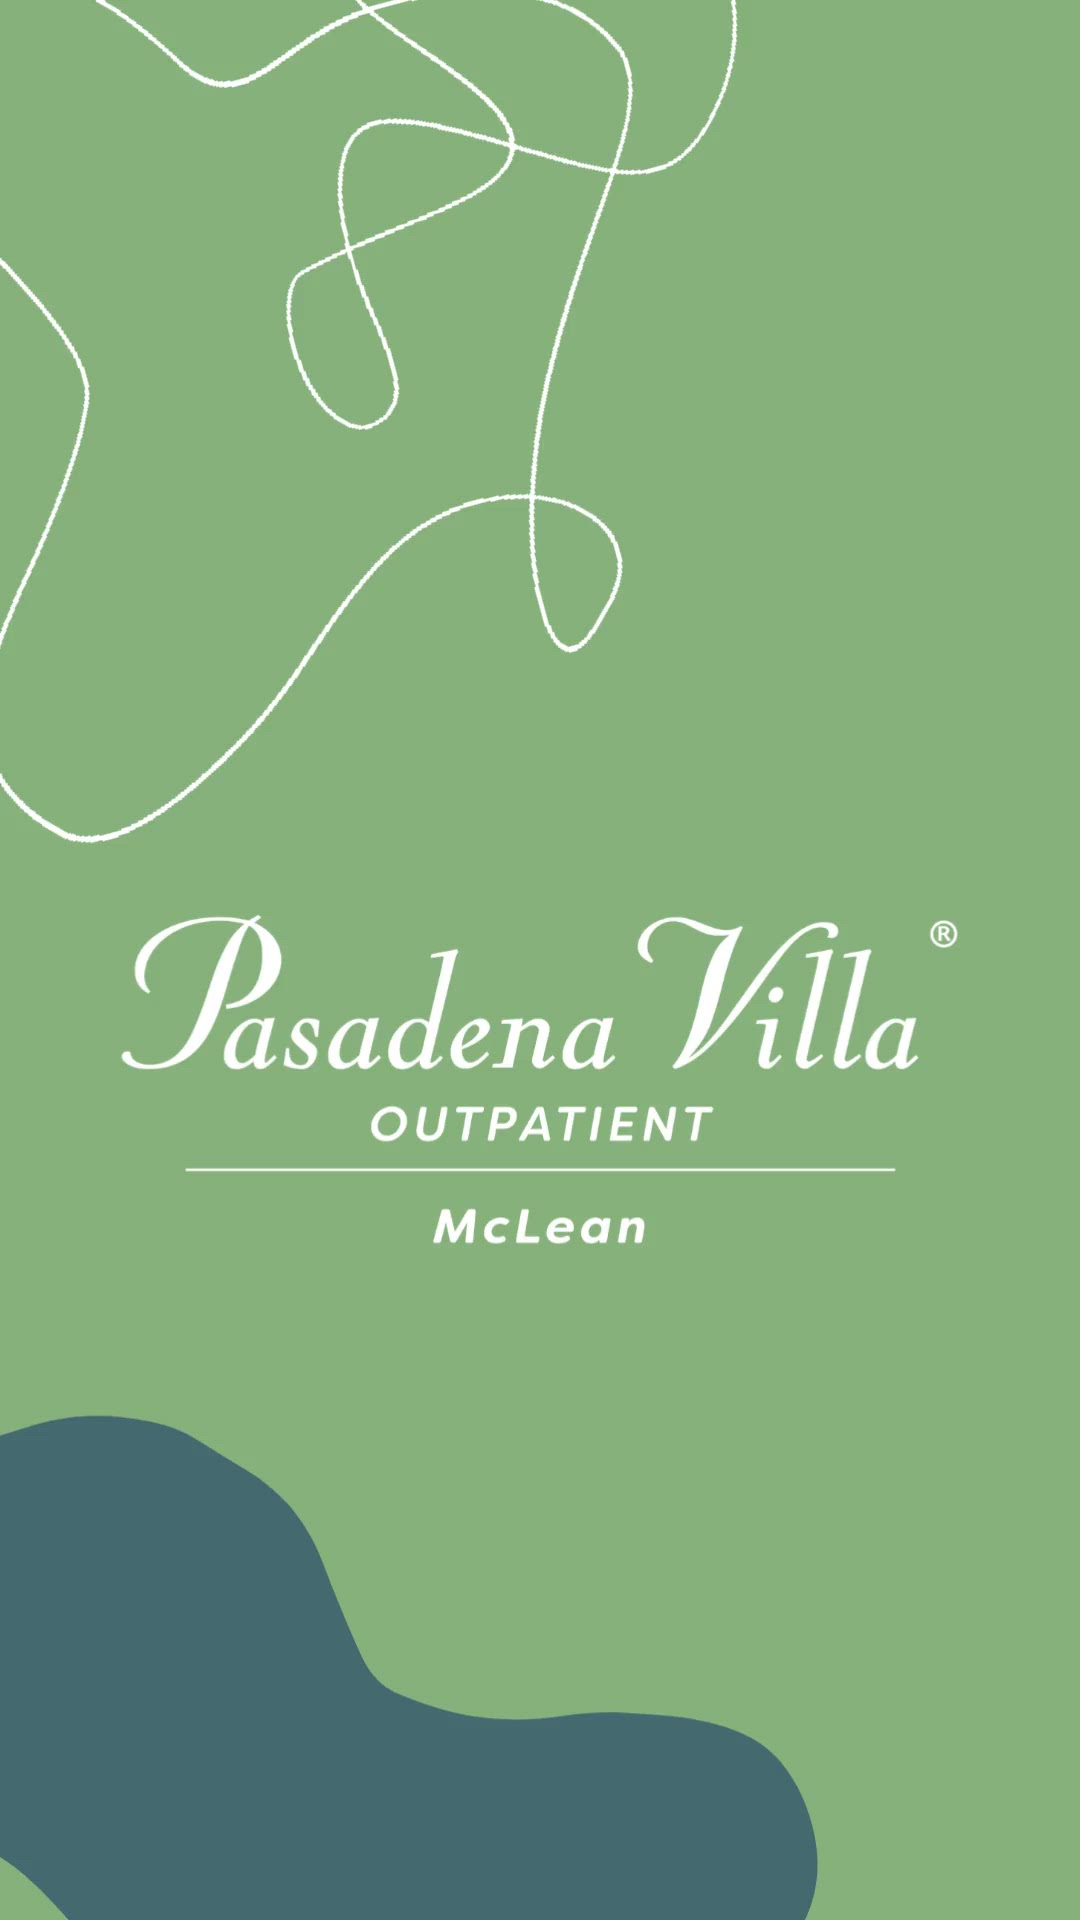 Pasadena Villa Outpatient - McLean